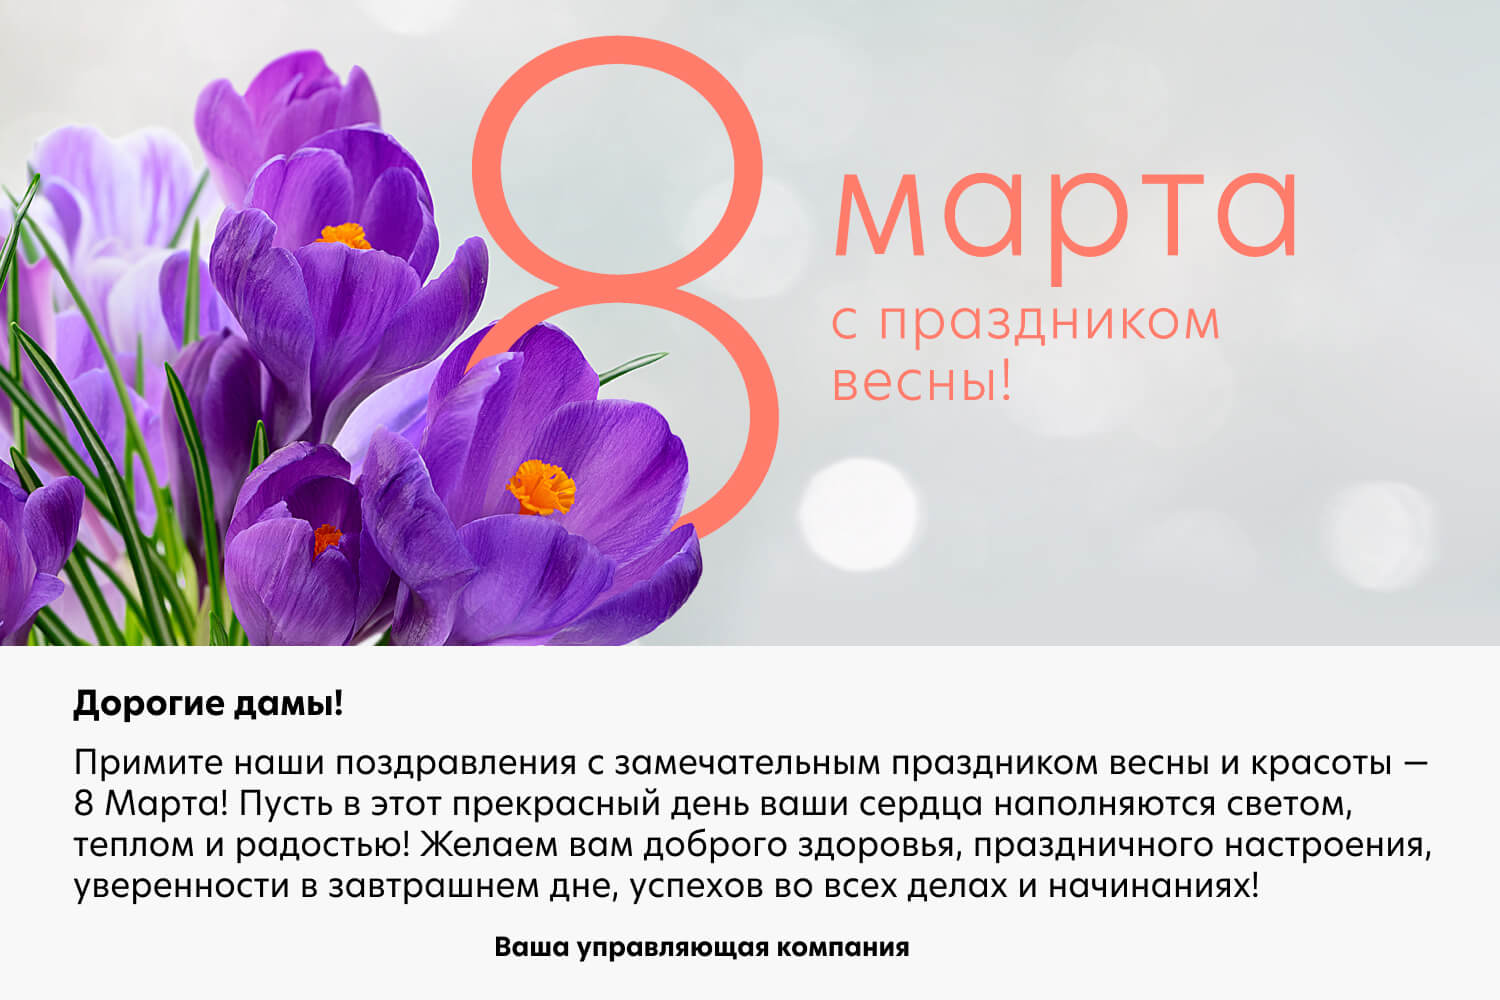 Поздравляем с 8 марта - праздником весны!